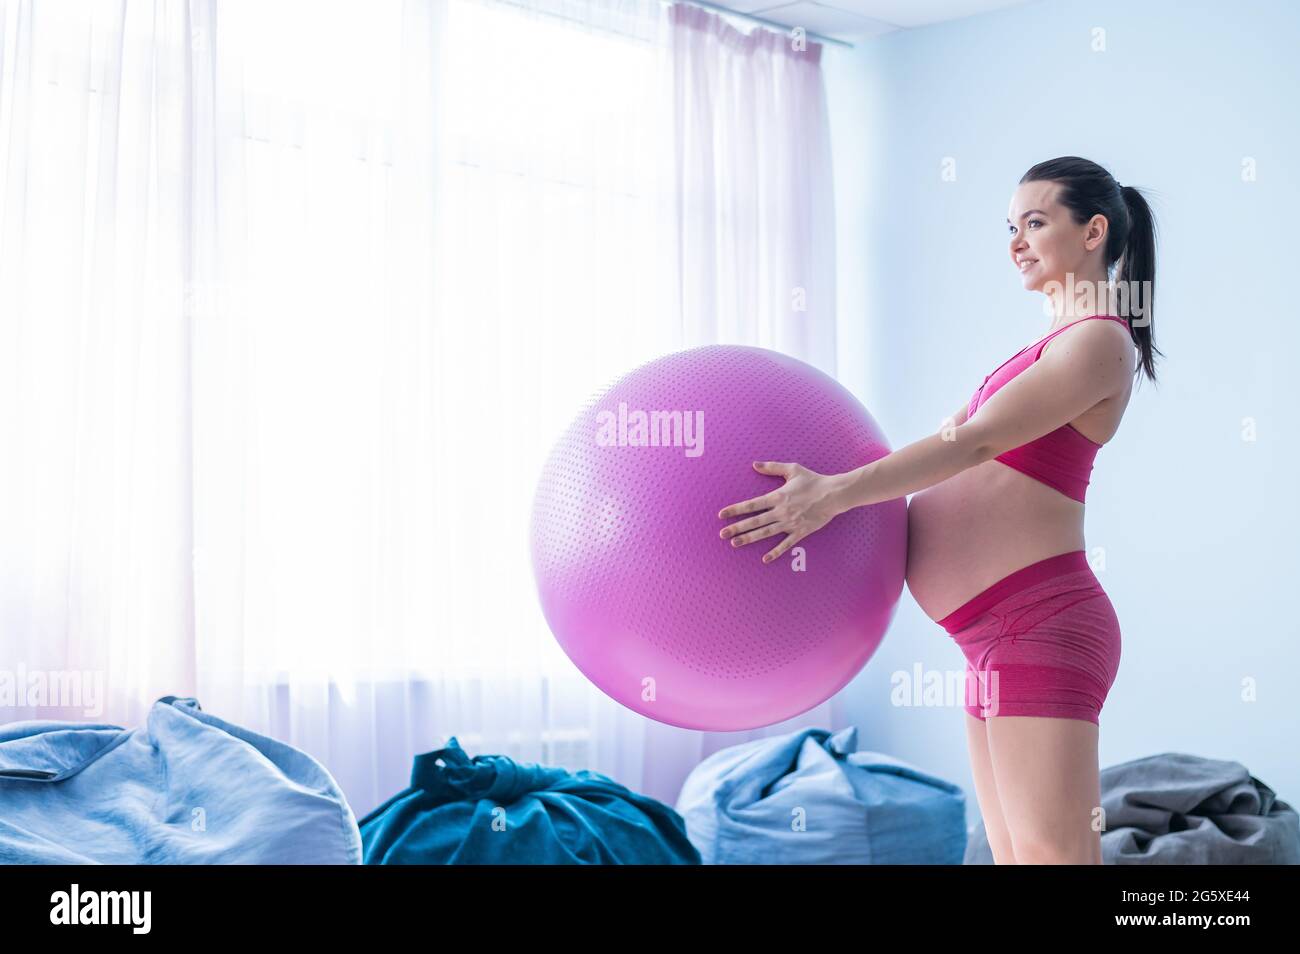 Une femme enceinte en vêtements de sport fait de la gymnastique pour les  femmes enceintes. La fille est engagée dans la forme physique avec une  balle pour les femmes enceintes. Dernier Photo